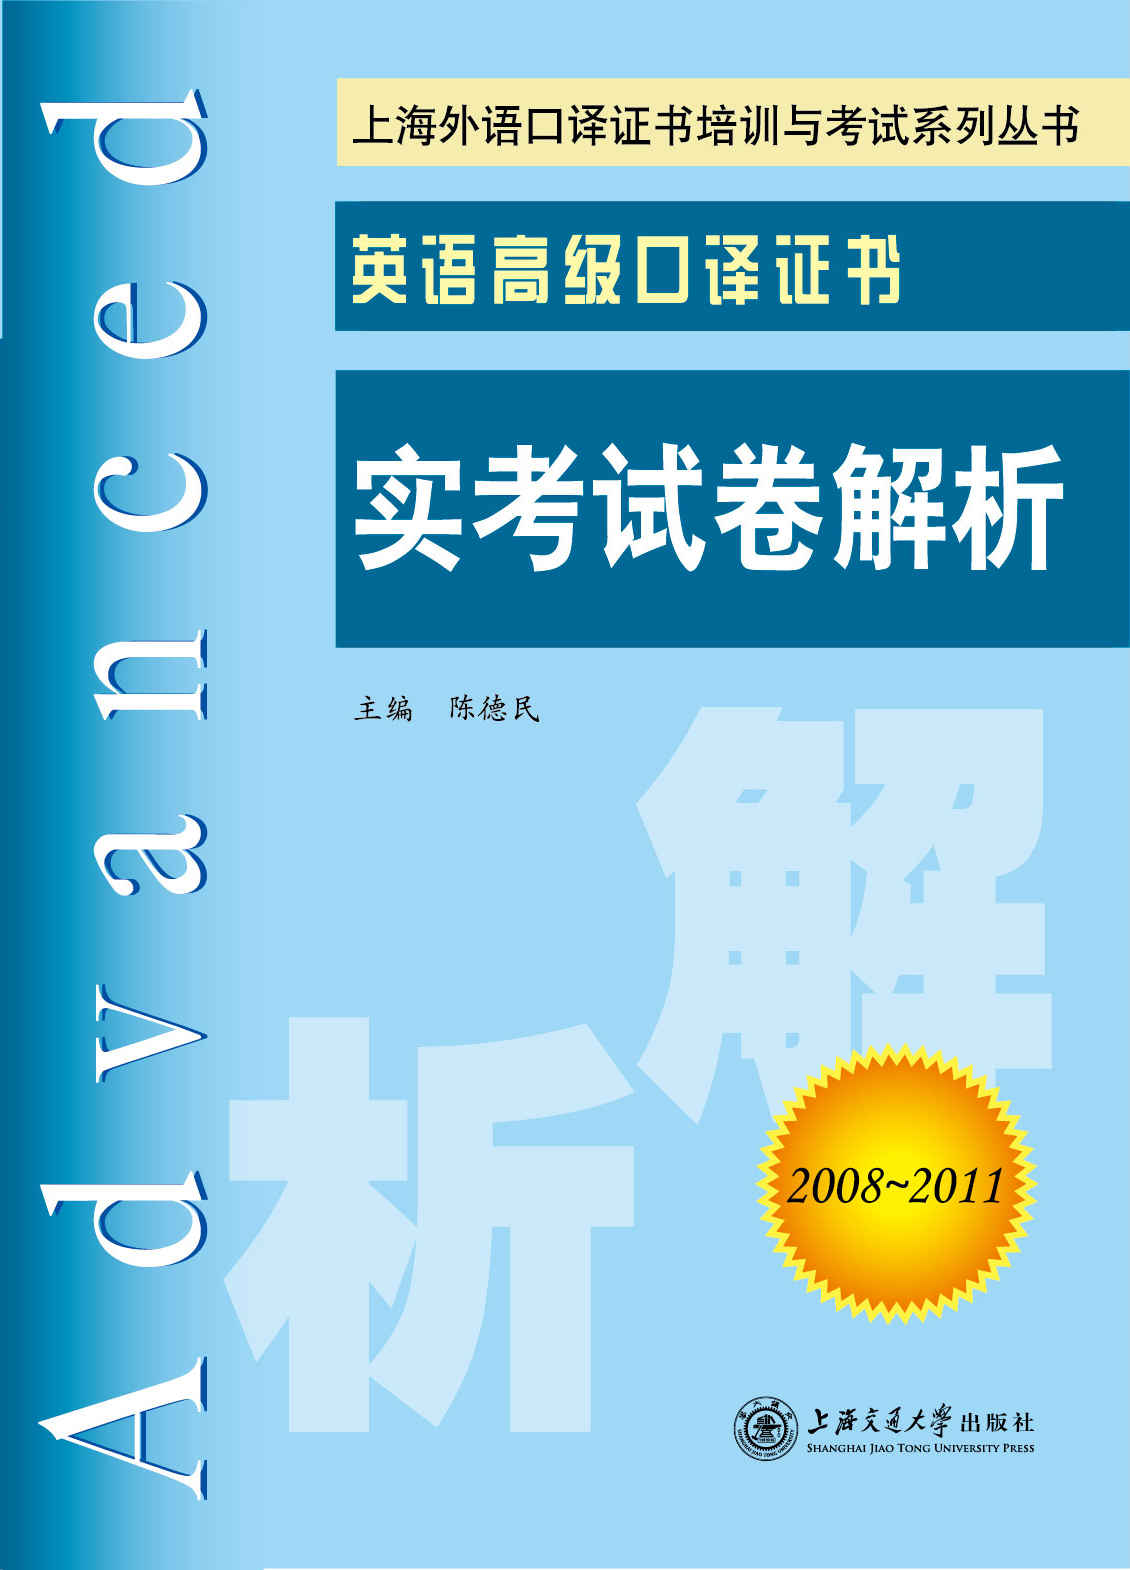 英语高级口译证书实考试卷解析(2008-2011) (上海外语口译证书培训与考试系列丛书)